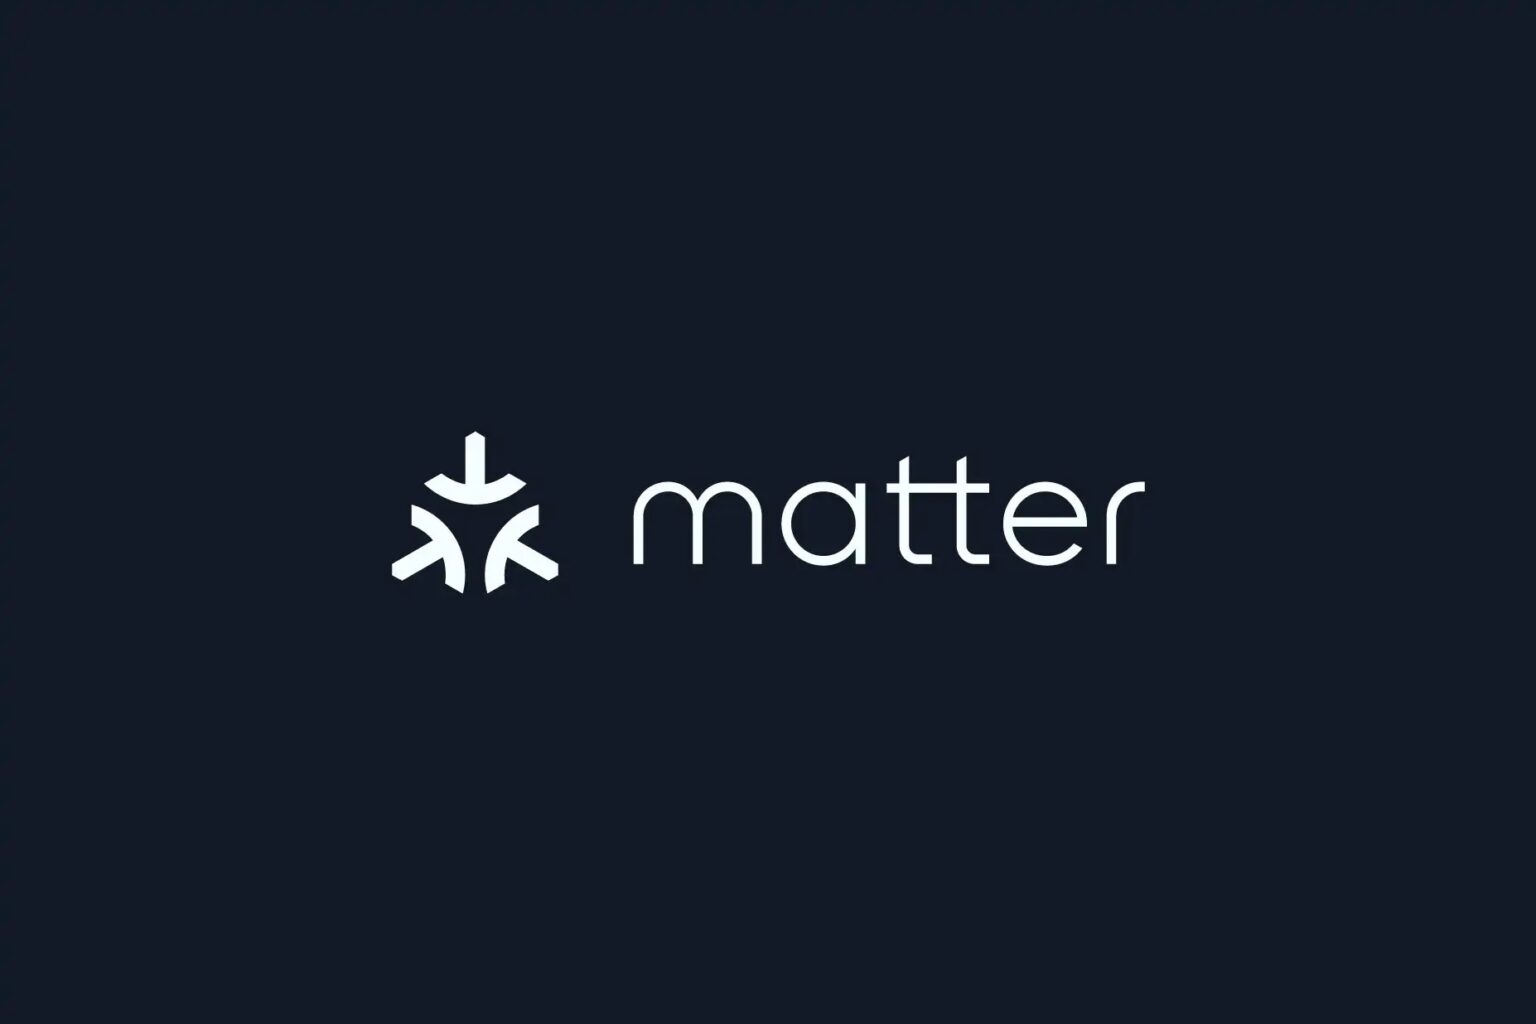 Matter standard logo